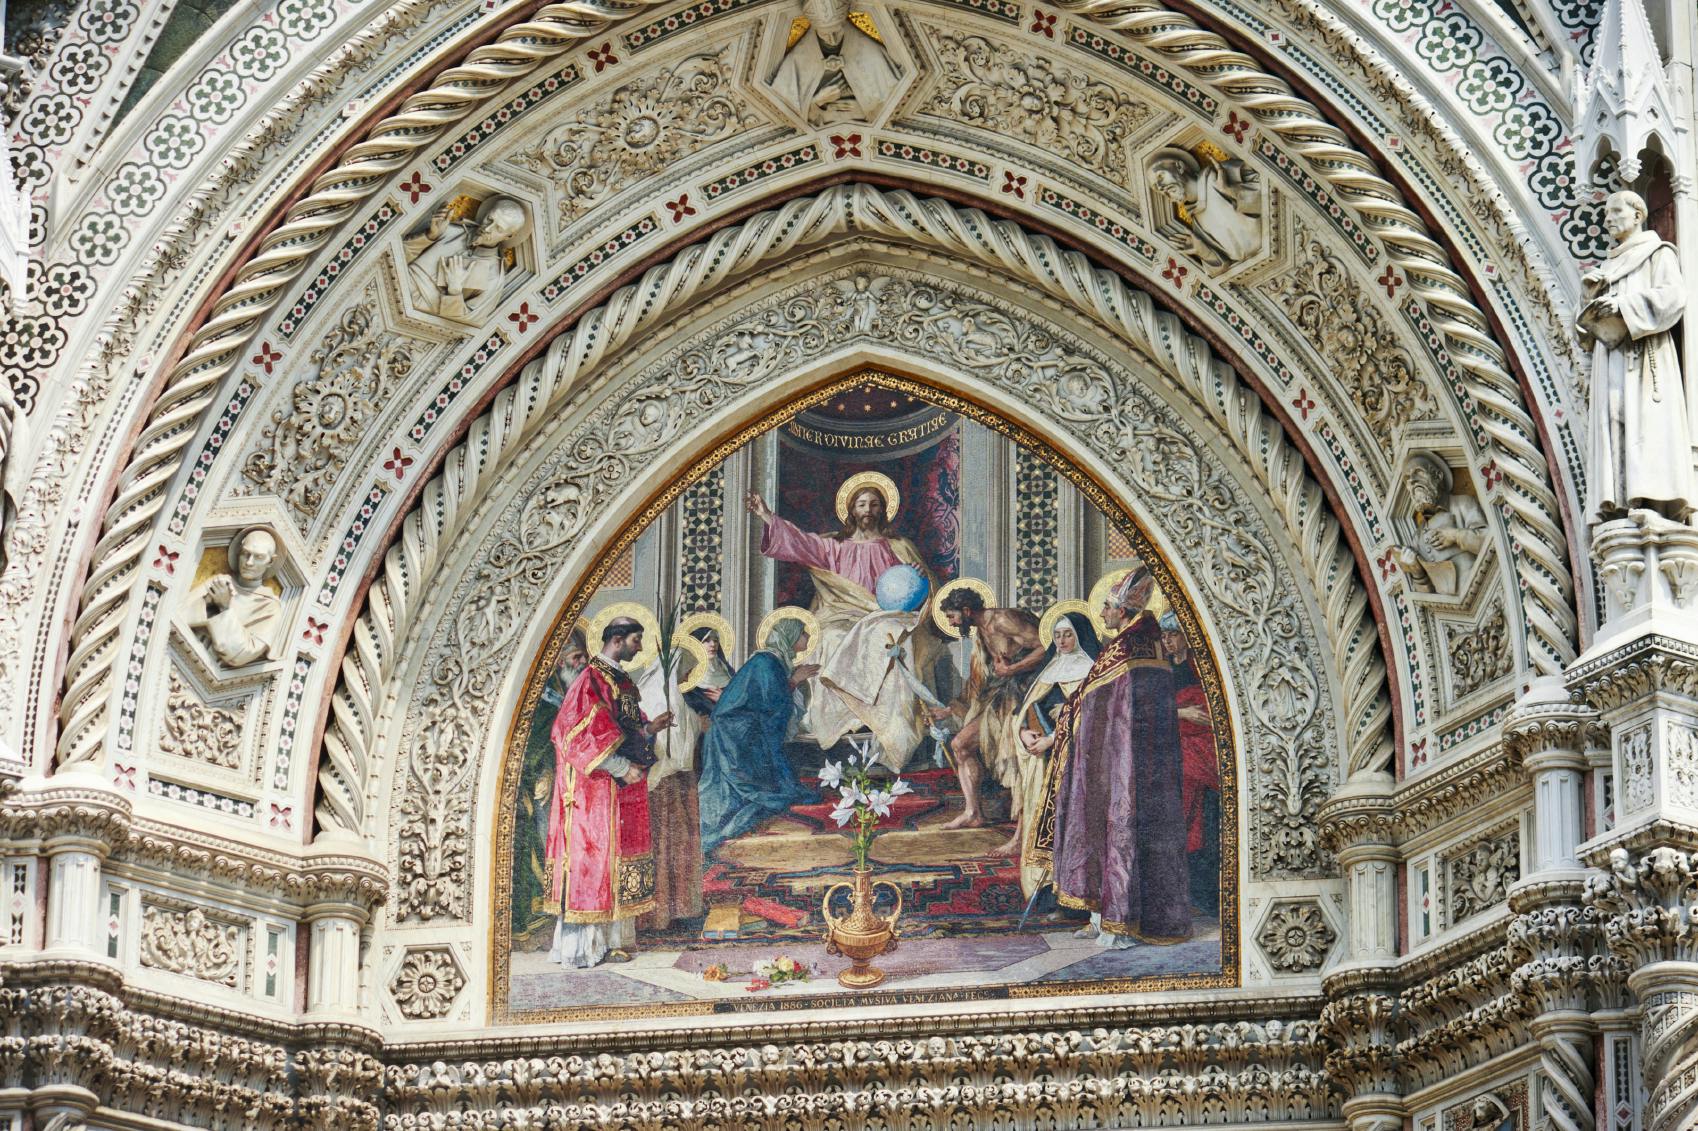 Kunstdagkaart voor Florence. Duomo, Uffizi en Accademia